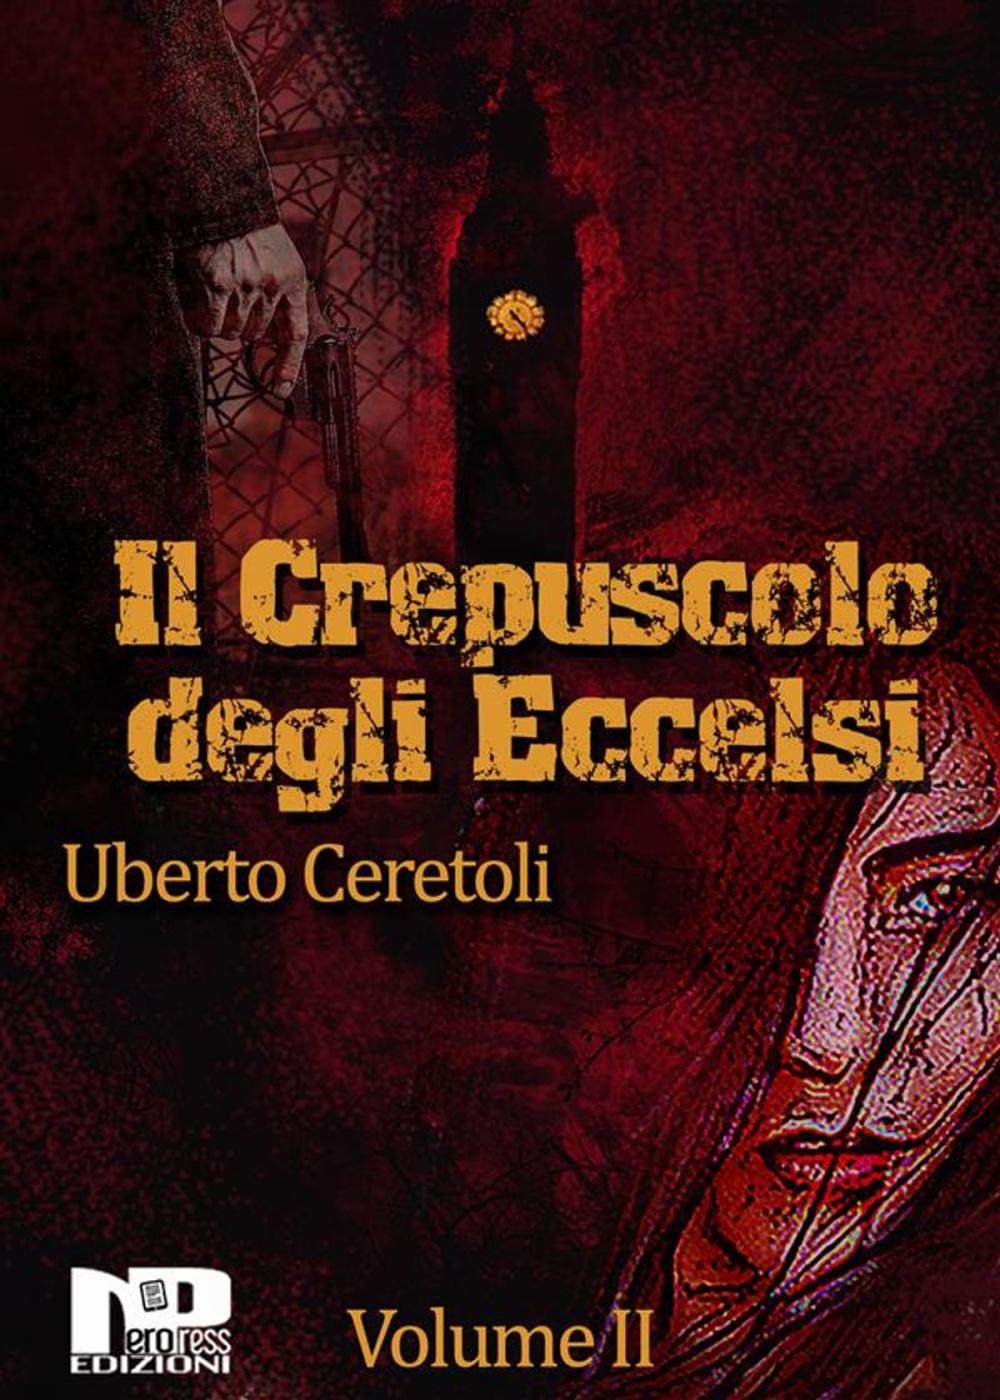 Big bigCover of Il crepuscolo degli eccelsi (Vol. II)